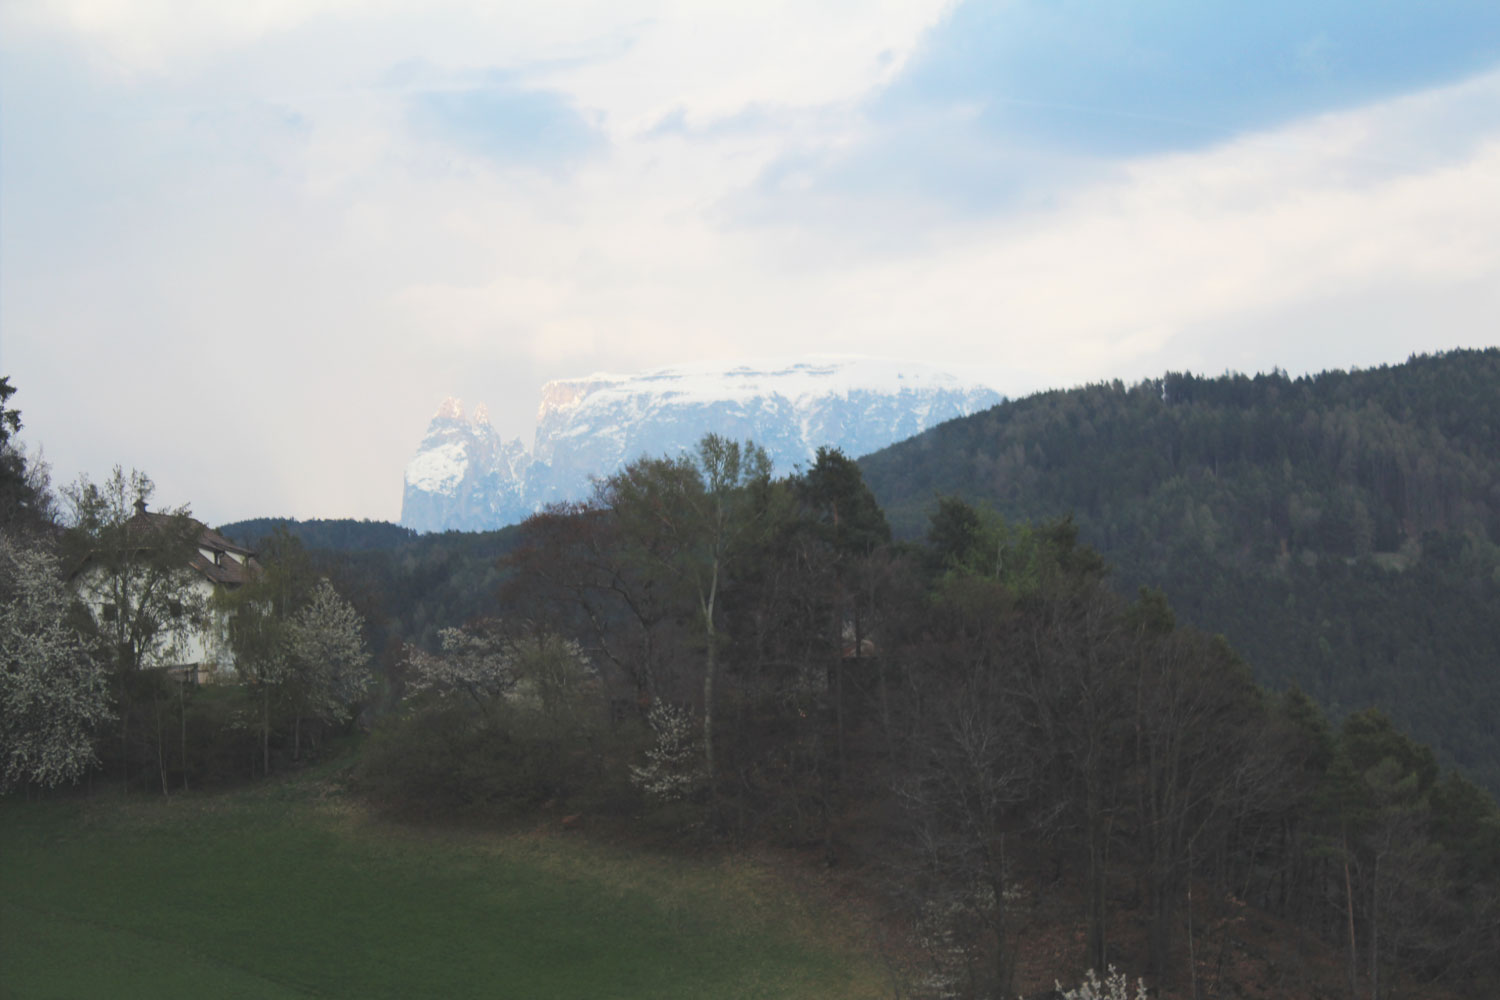 Zuid-Tirol en Guesthouse Gloriette: een aanrader!